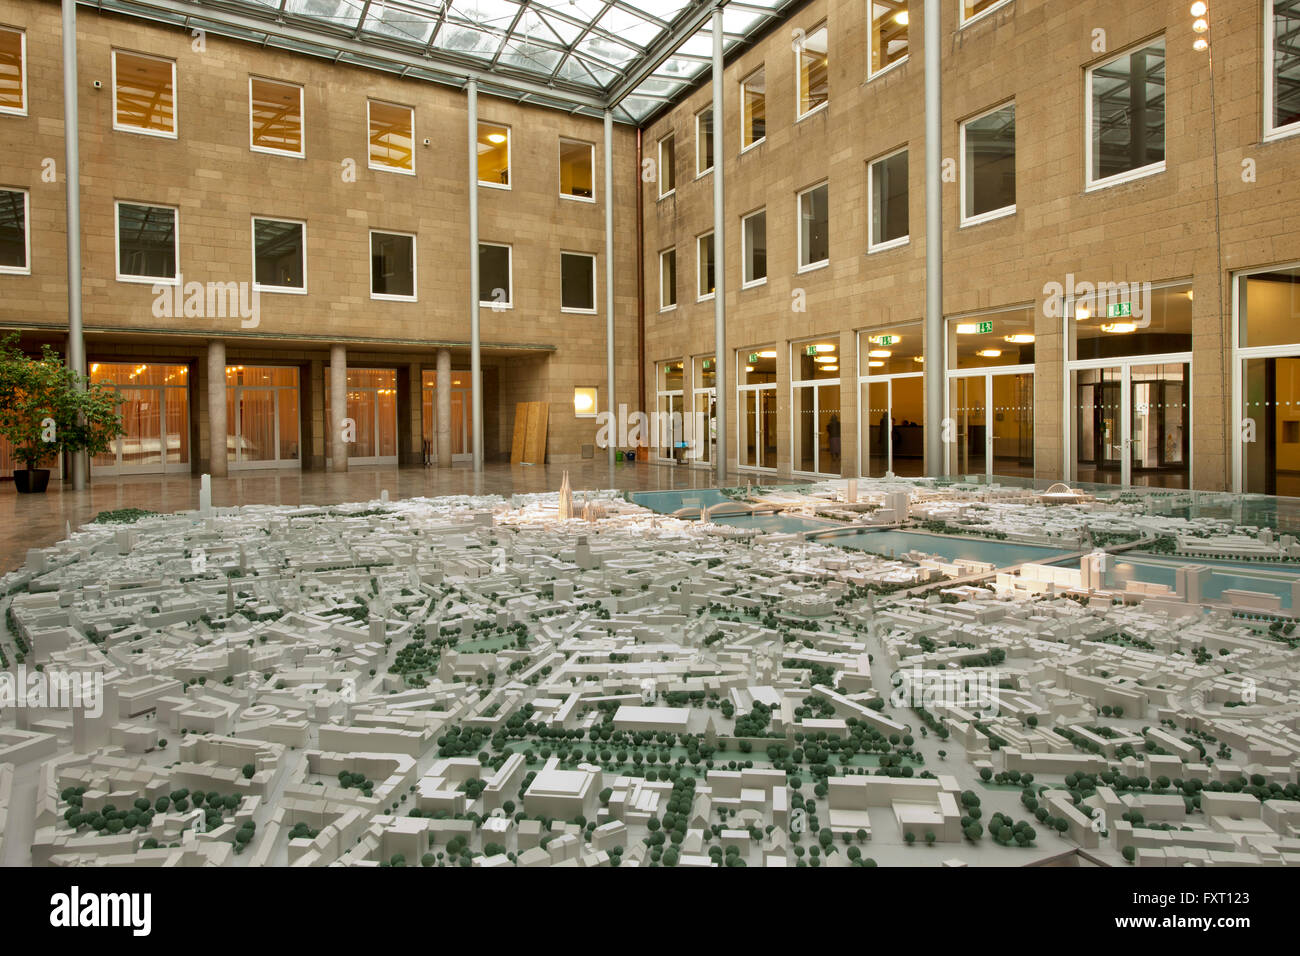 Kˆln, 'Piazetta' im 'Spanischen Bau' des Rathauses, Modell der Stadt Kˆln Stock Photo